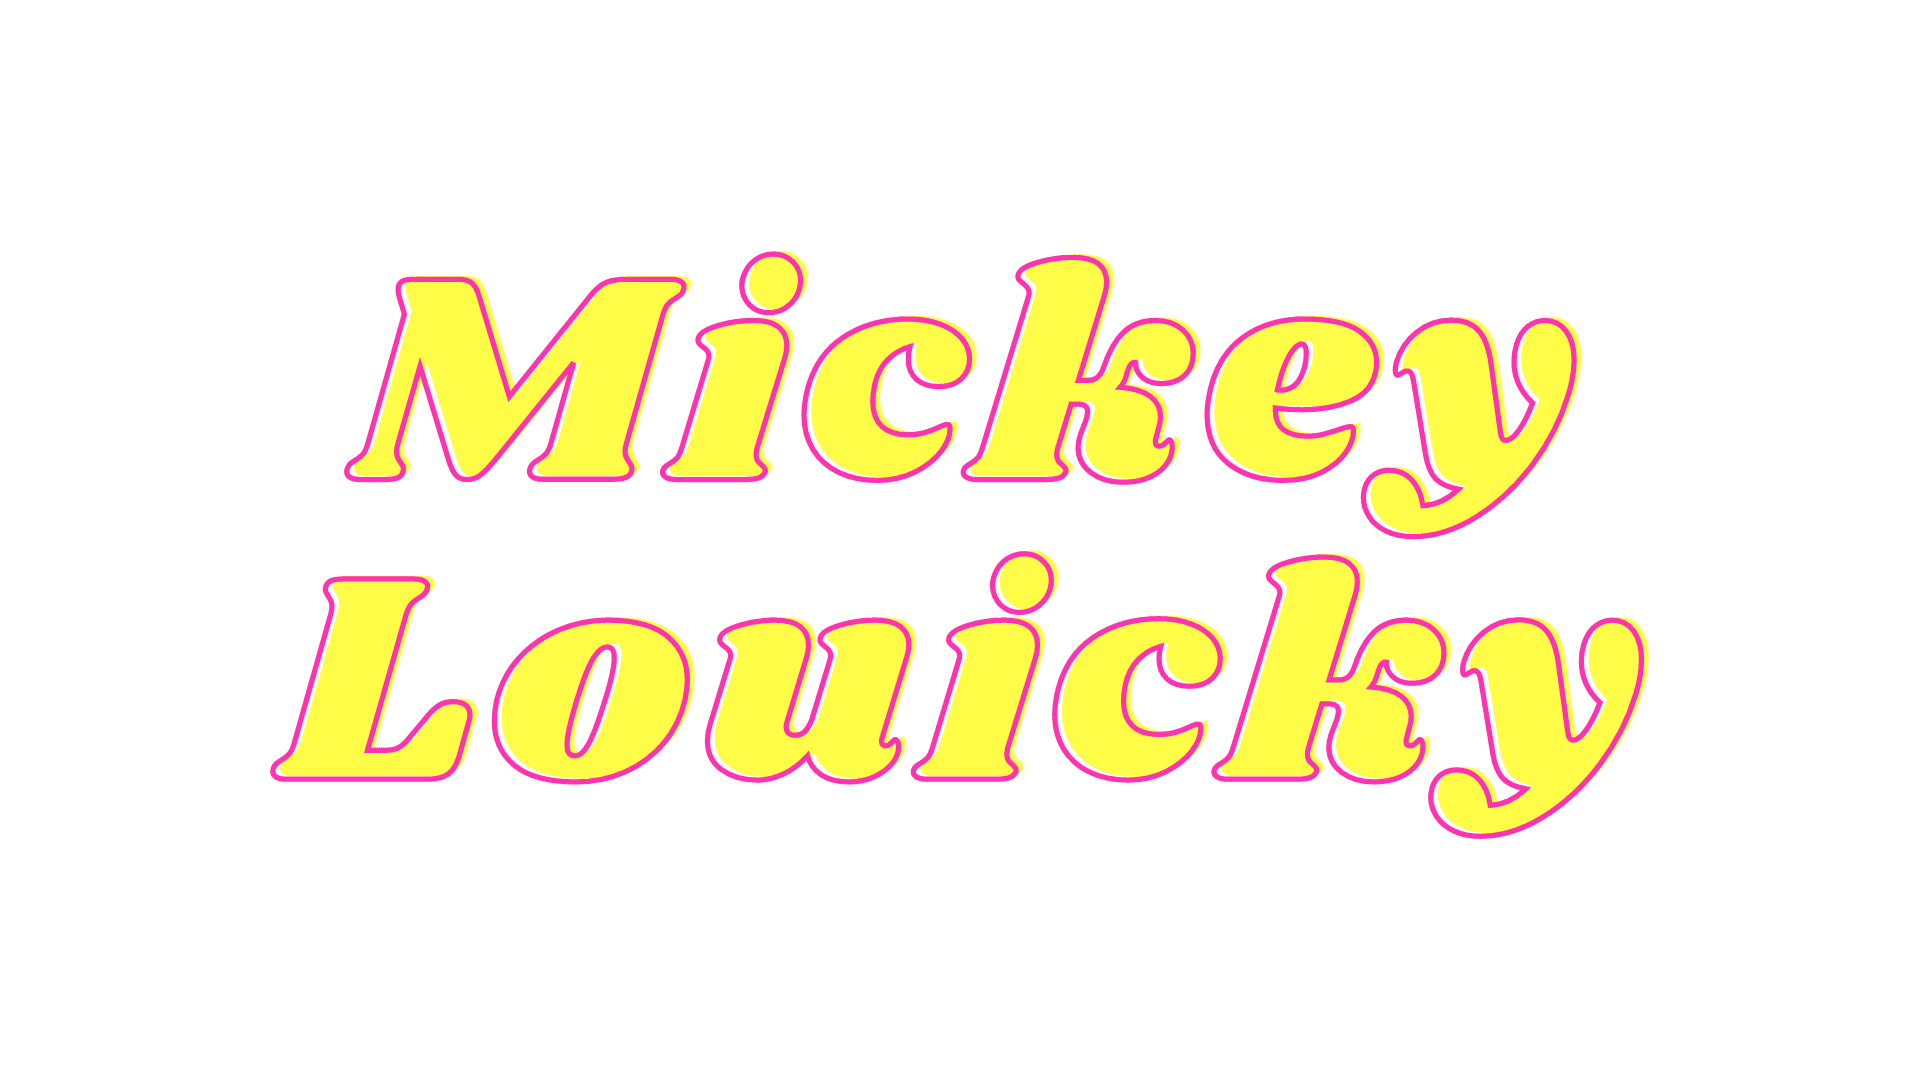 Mickey Louicky